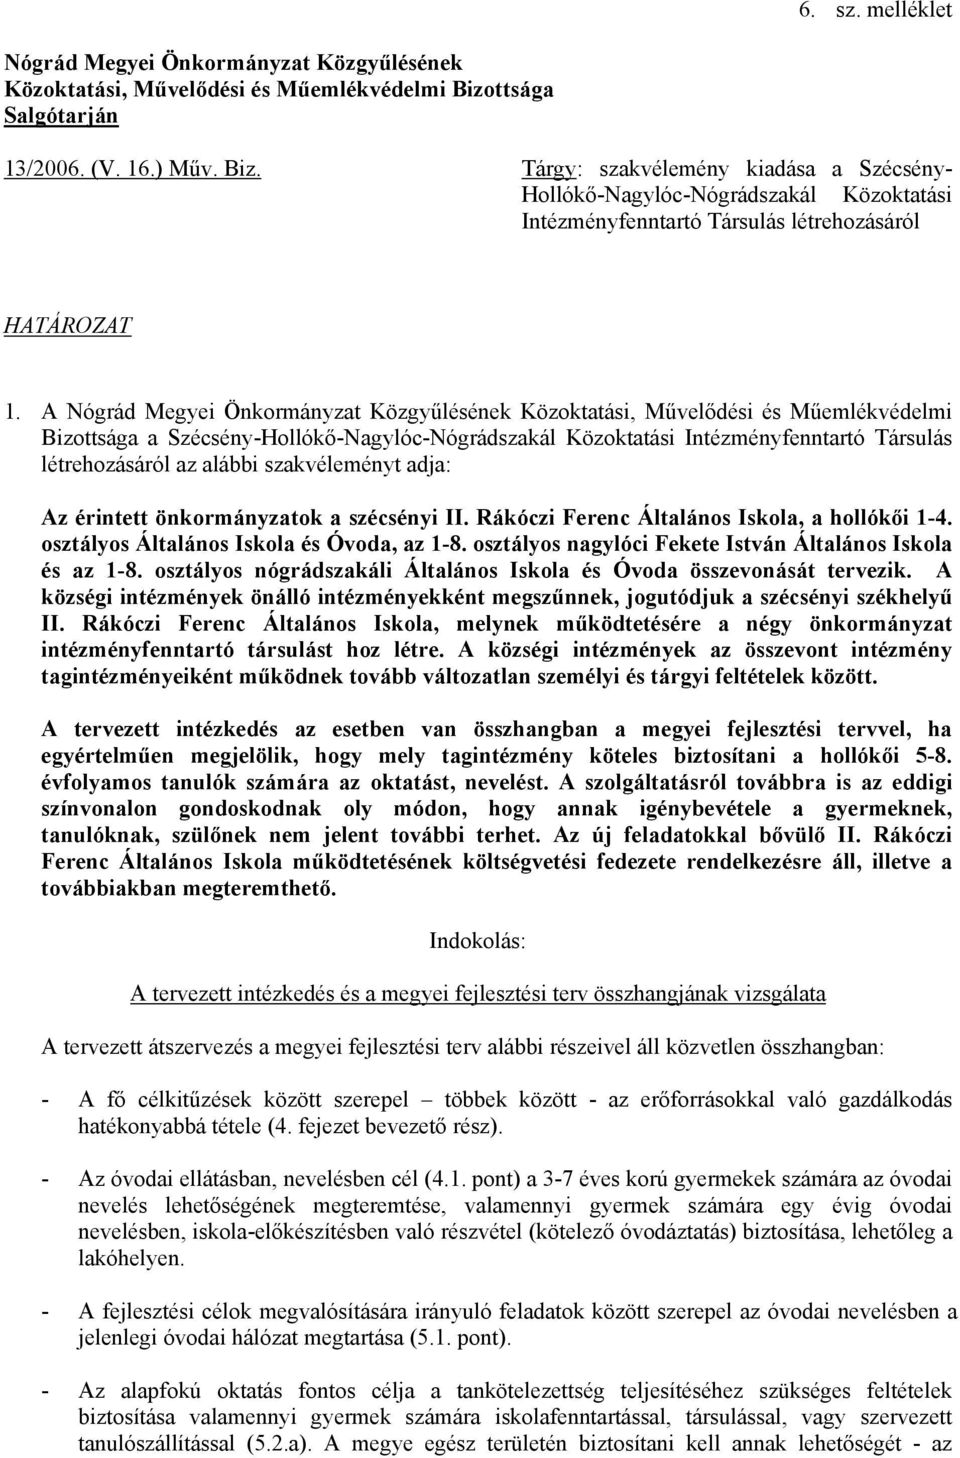 A Nógrád Megyei Önkormányzat Közgyűlésének Közoktatási, Művelődési és Műemlékvédelmi Bizottsága a Szécsény-Hollókő-Nagylóc-Nógrádszakál Közoktatási Intézményfenntartó Társulás létrehozásáról az